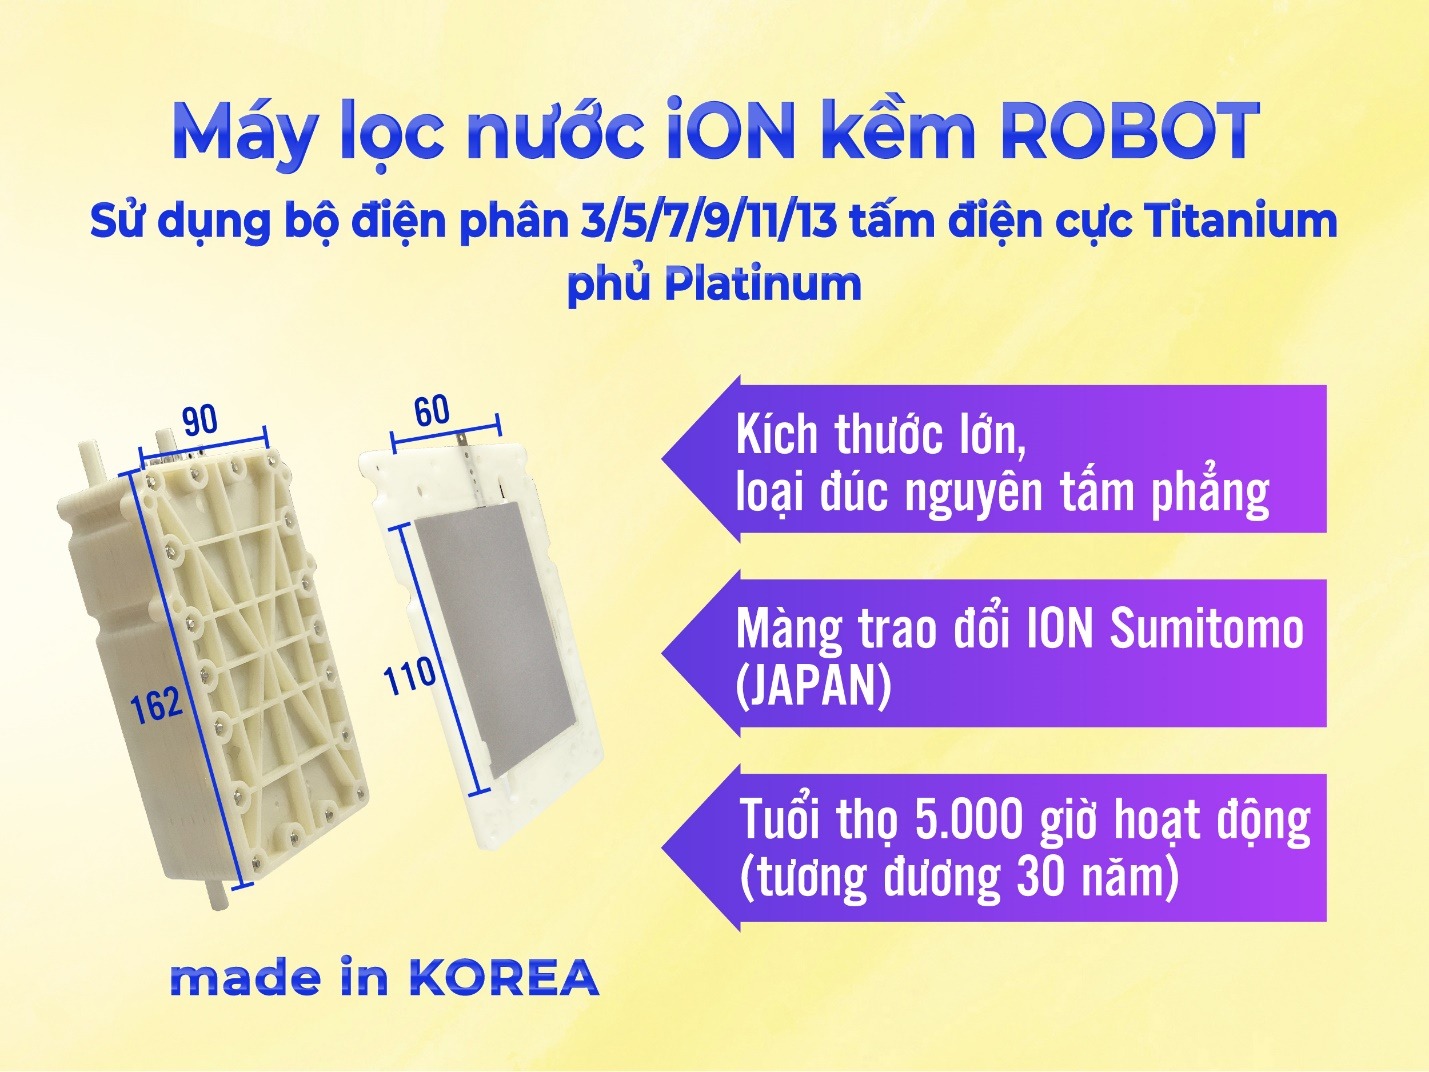 Máy Lọc Nước Điện Giải Nóng Thông Minh ROBOT ionSmart 38 - Hàng chính hãng